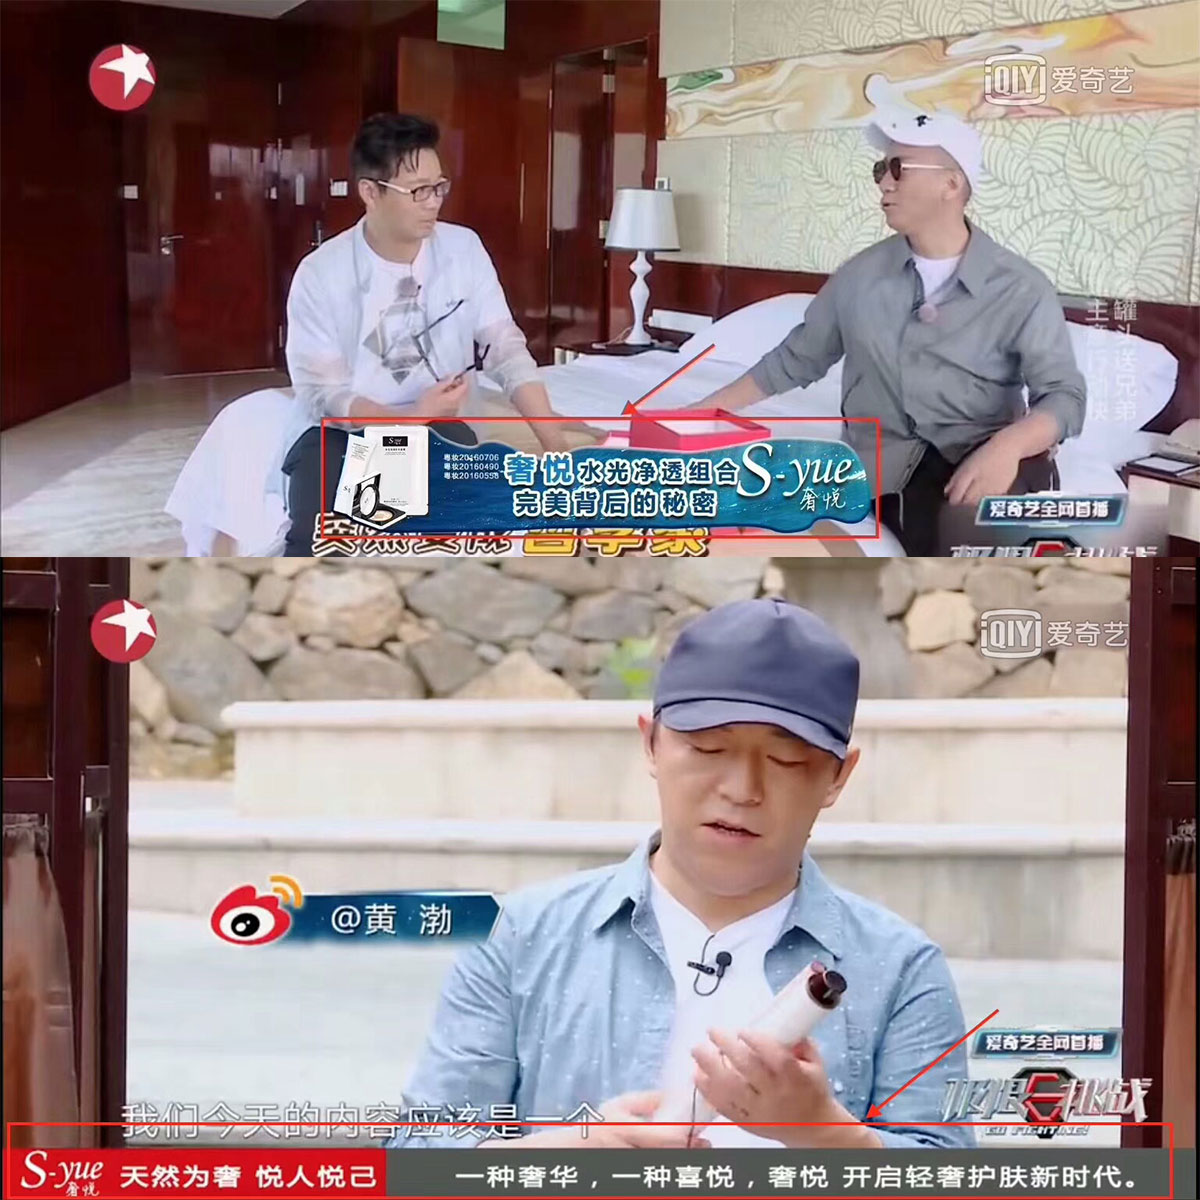 恭喜奢悦冠名【中餐厅2】湖南卫视 腾讯视频 芒果TV 中餐厅(www.zzx8.com)